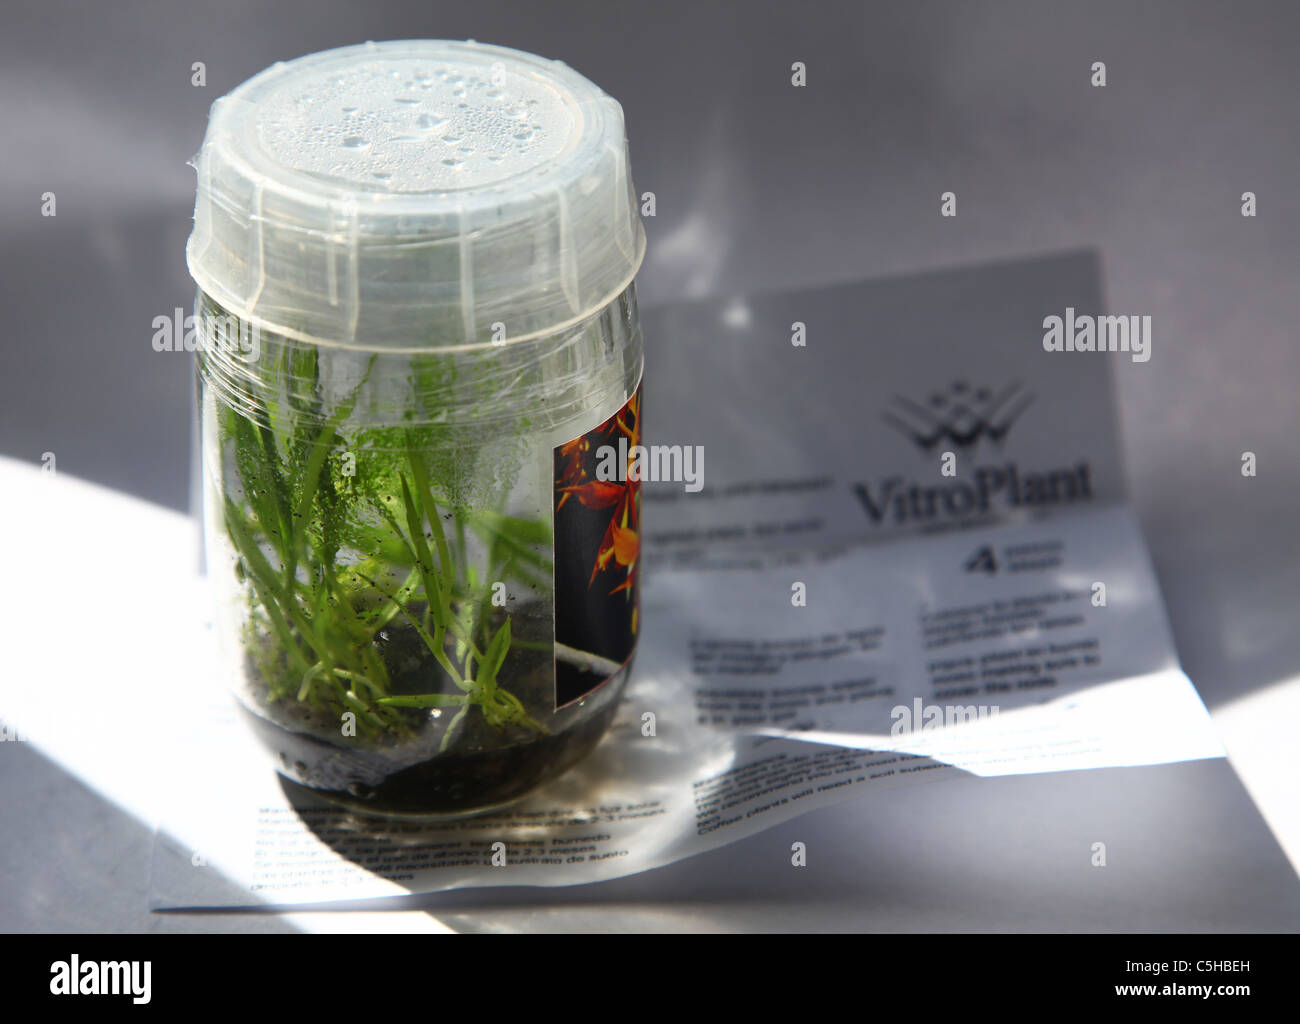 Einen Topf mit Orchideen in vitro gezüchteten Pflanzen Stockfotografie -  Alamy